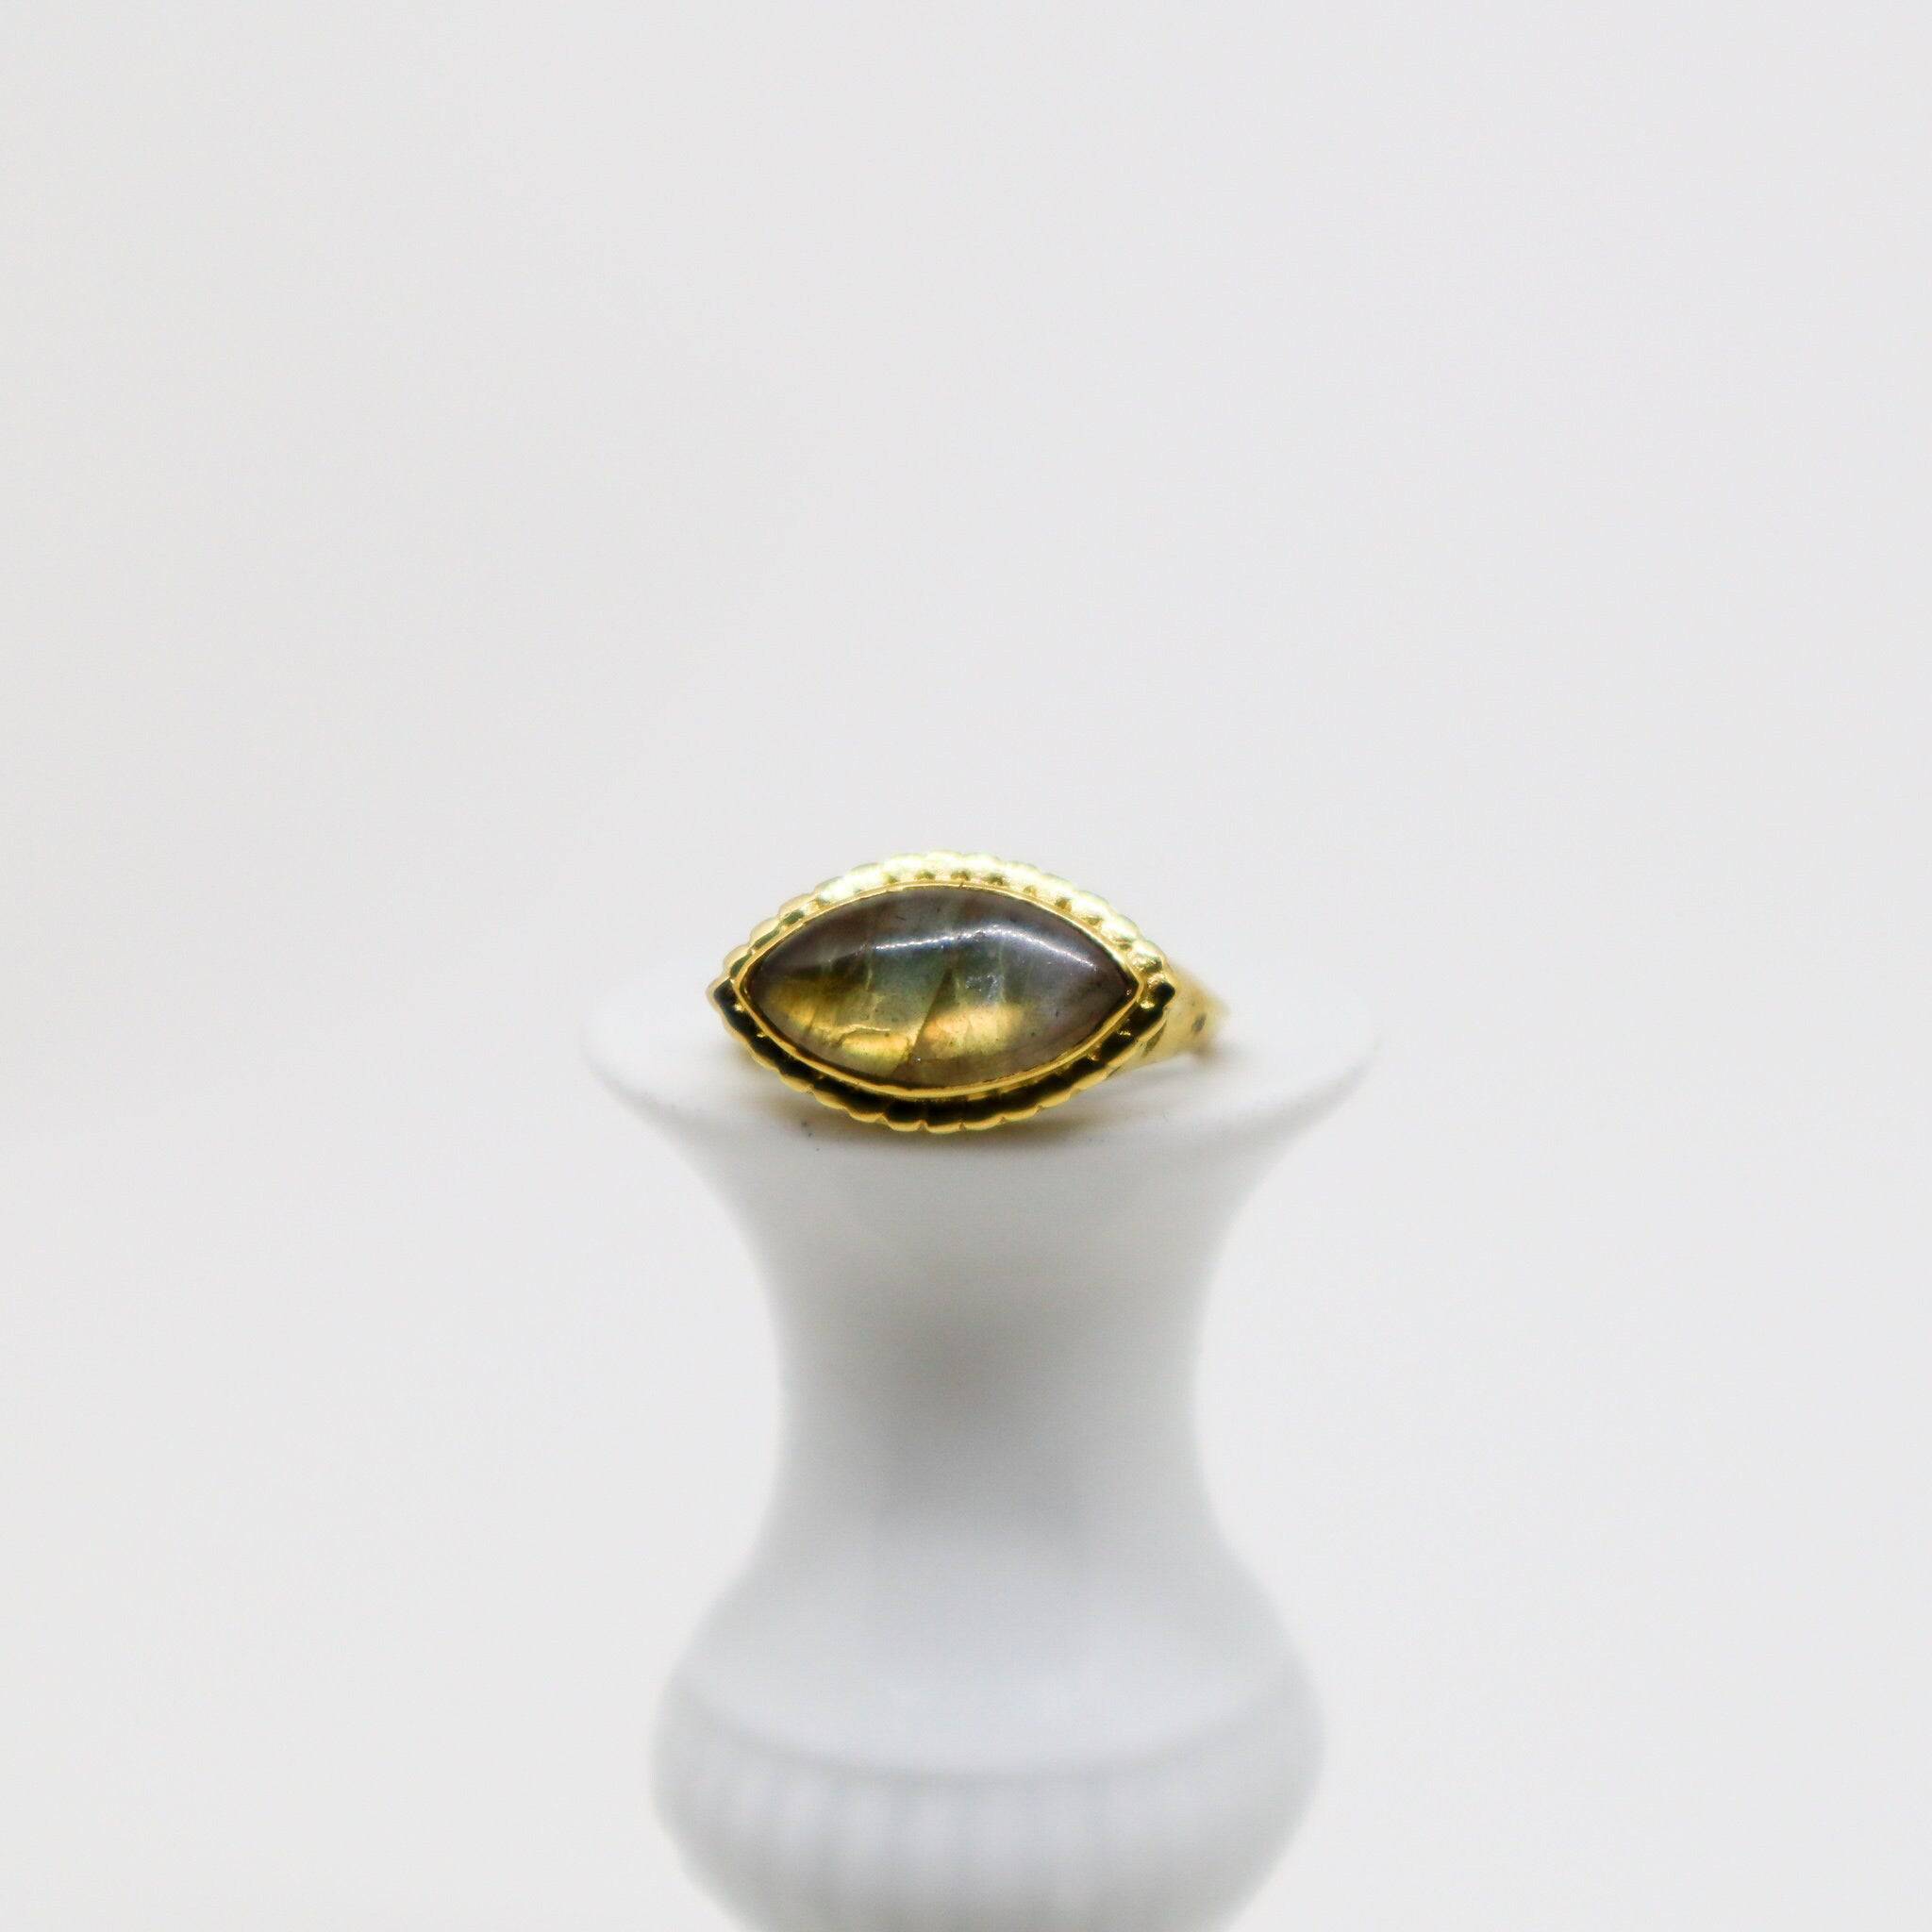 Augenförmiger Labradorit Ring groß gold handgemacht - NooeBerlin